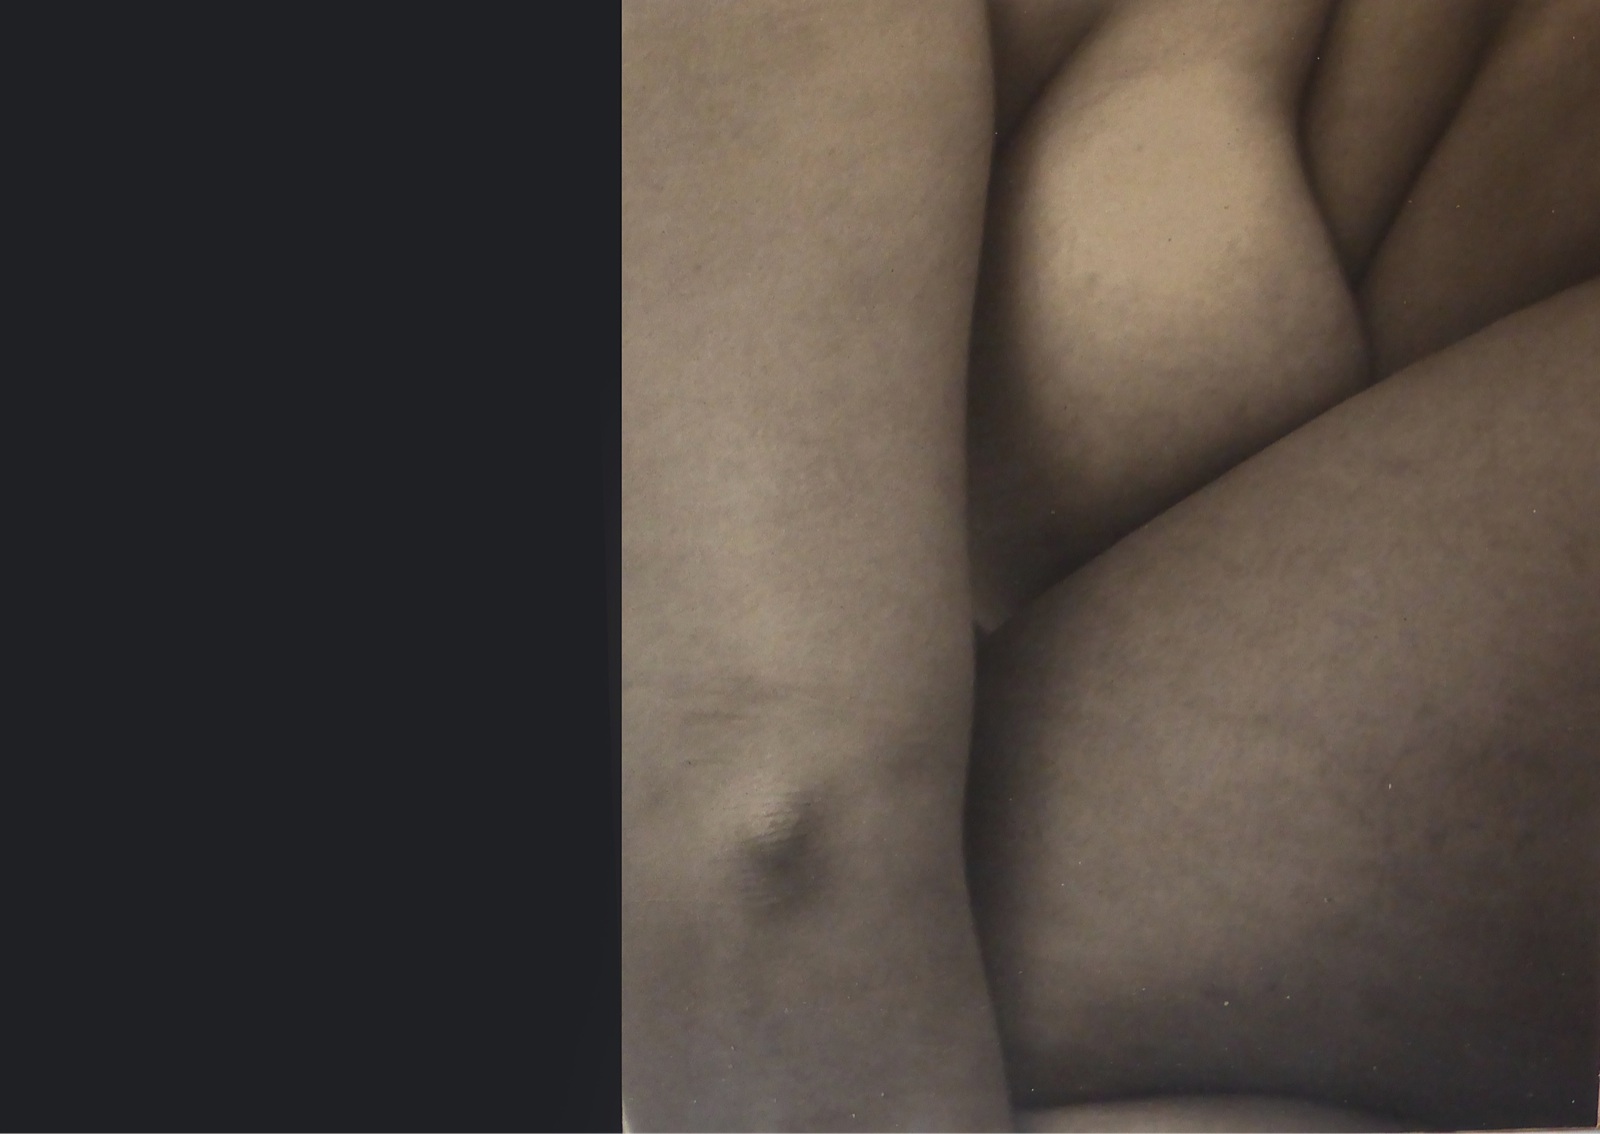 Corpo#4, 2010, materiali vari, 118,9 x 84,1 cm Courtesy dell’artista e Galleria Passaggi, Pisa